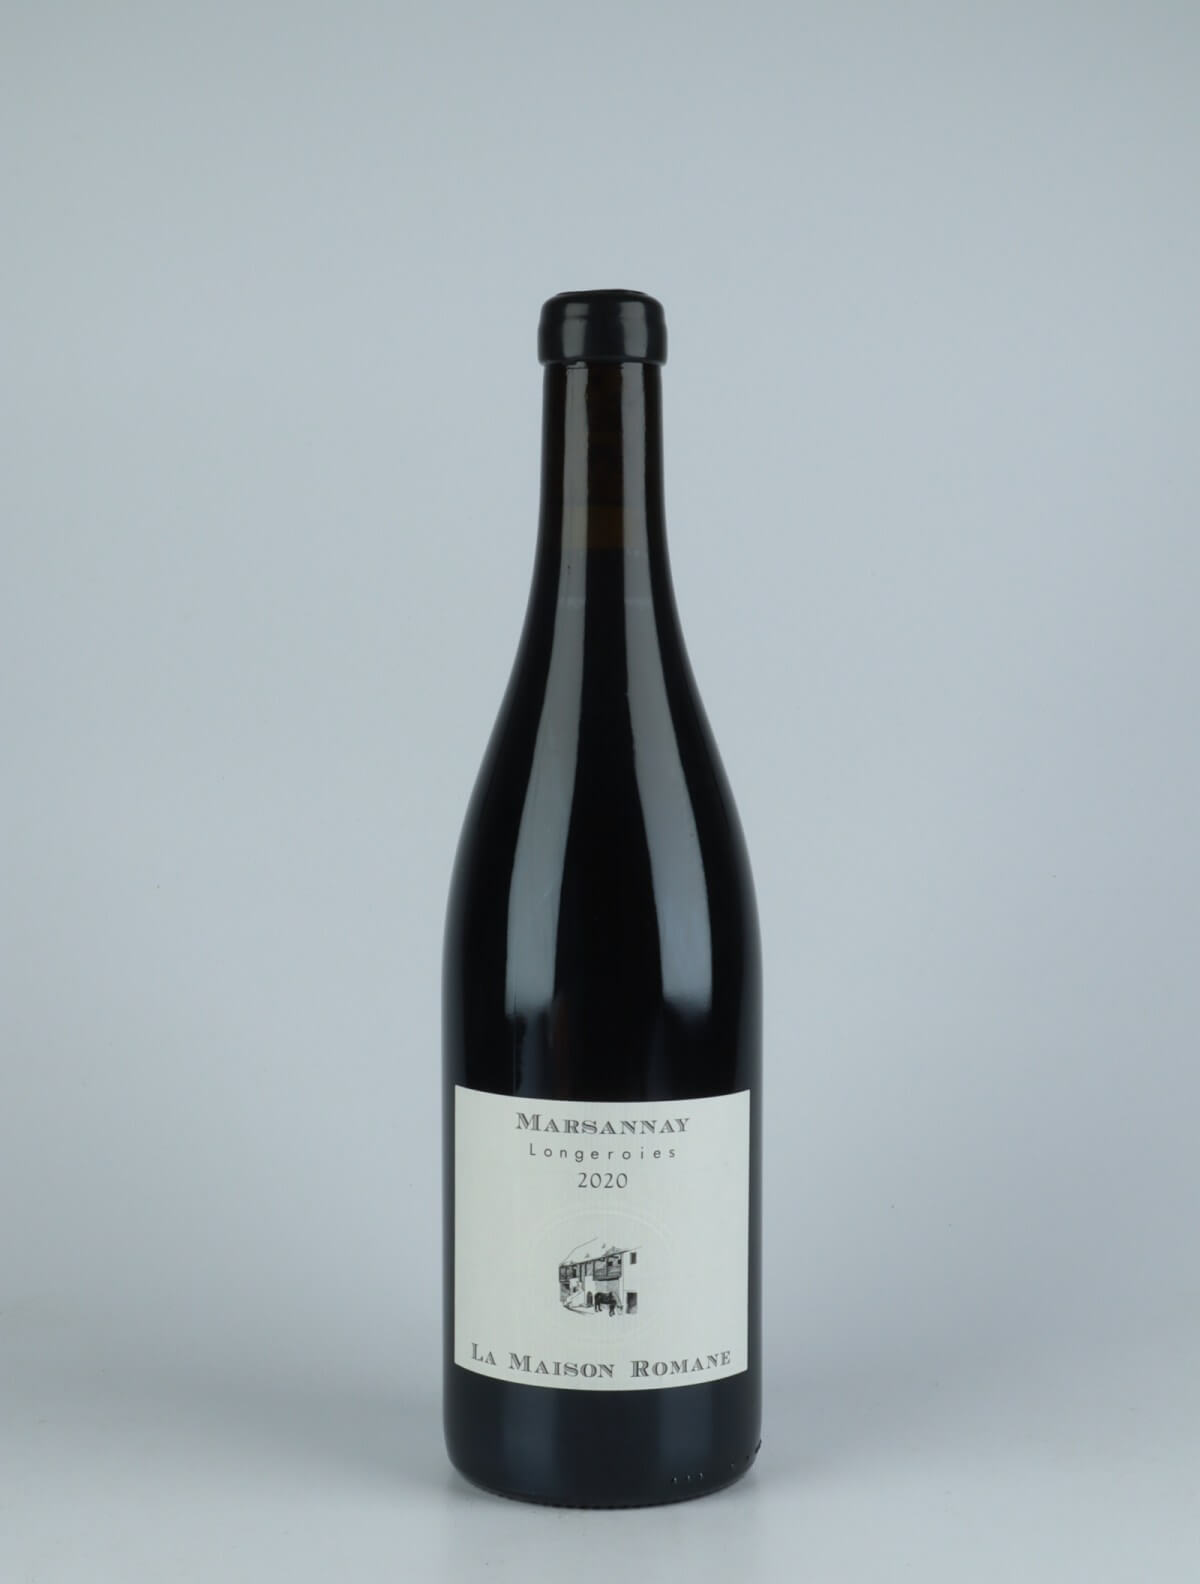 En flaske 2020 Marsannay - Longeroies Rødvin fra La Maison Romane, Bourgogne i Frankrig